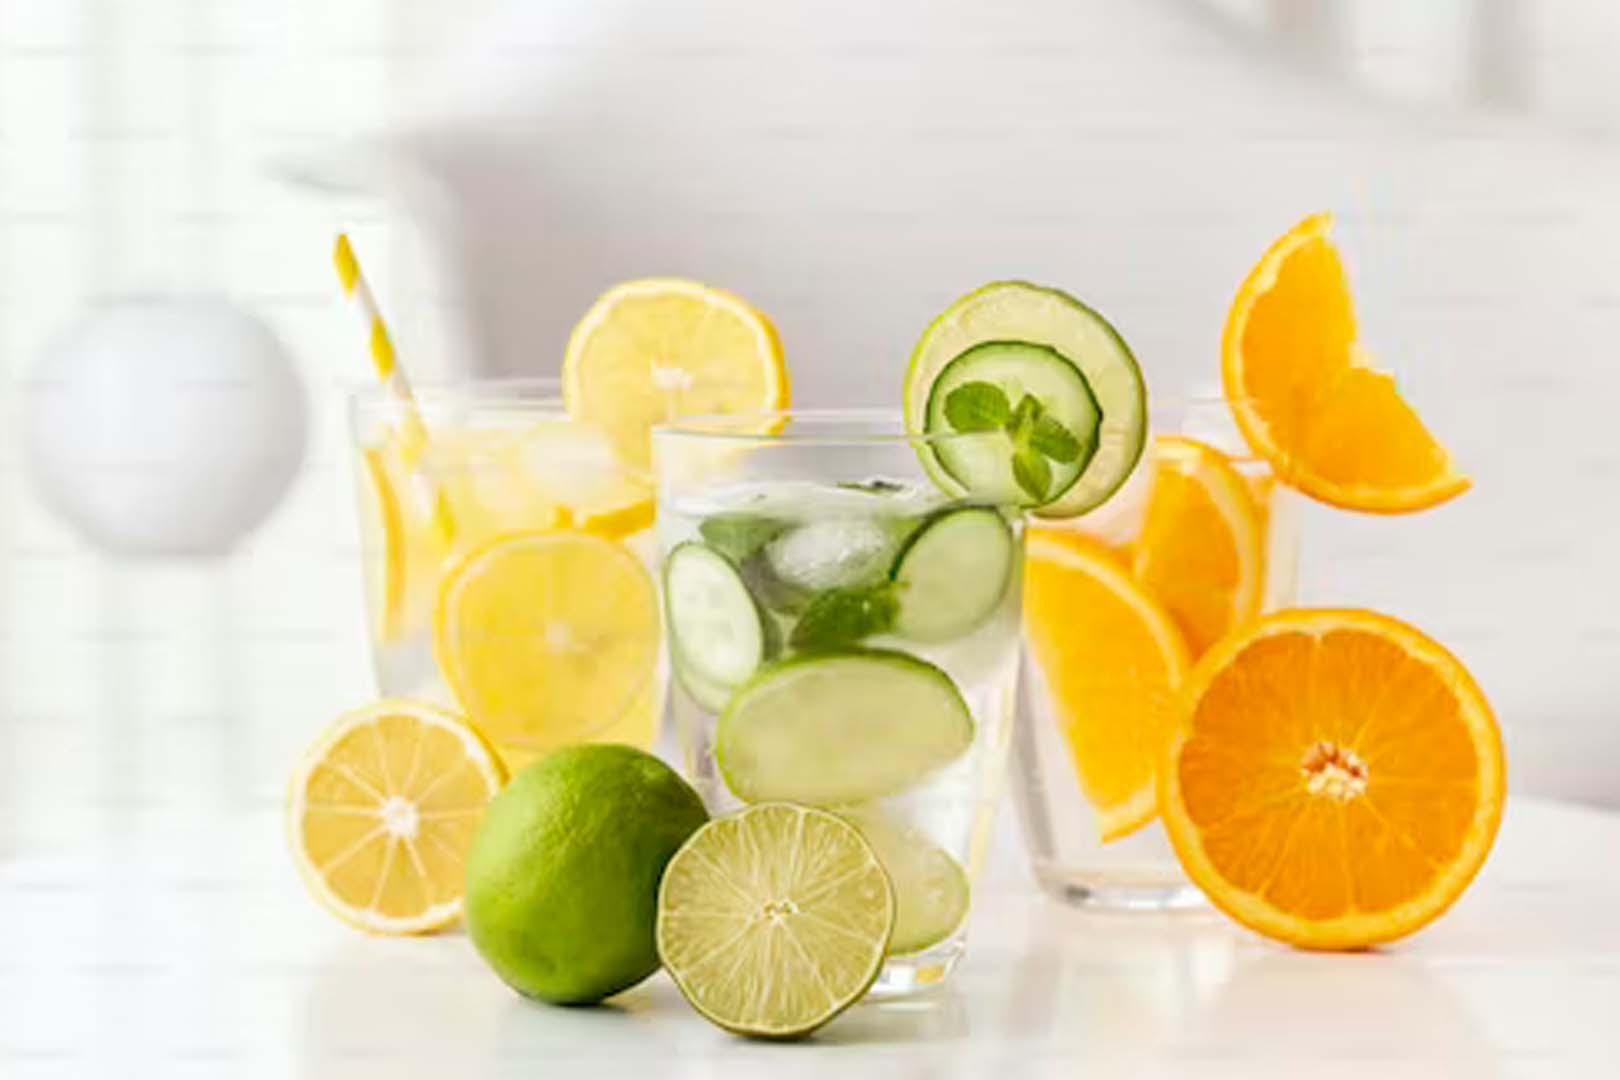  Manfaat Infused Water Lemon, Menyegarkan dan Menguntungkan untuk Kesehatan Anda